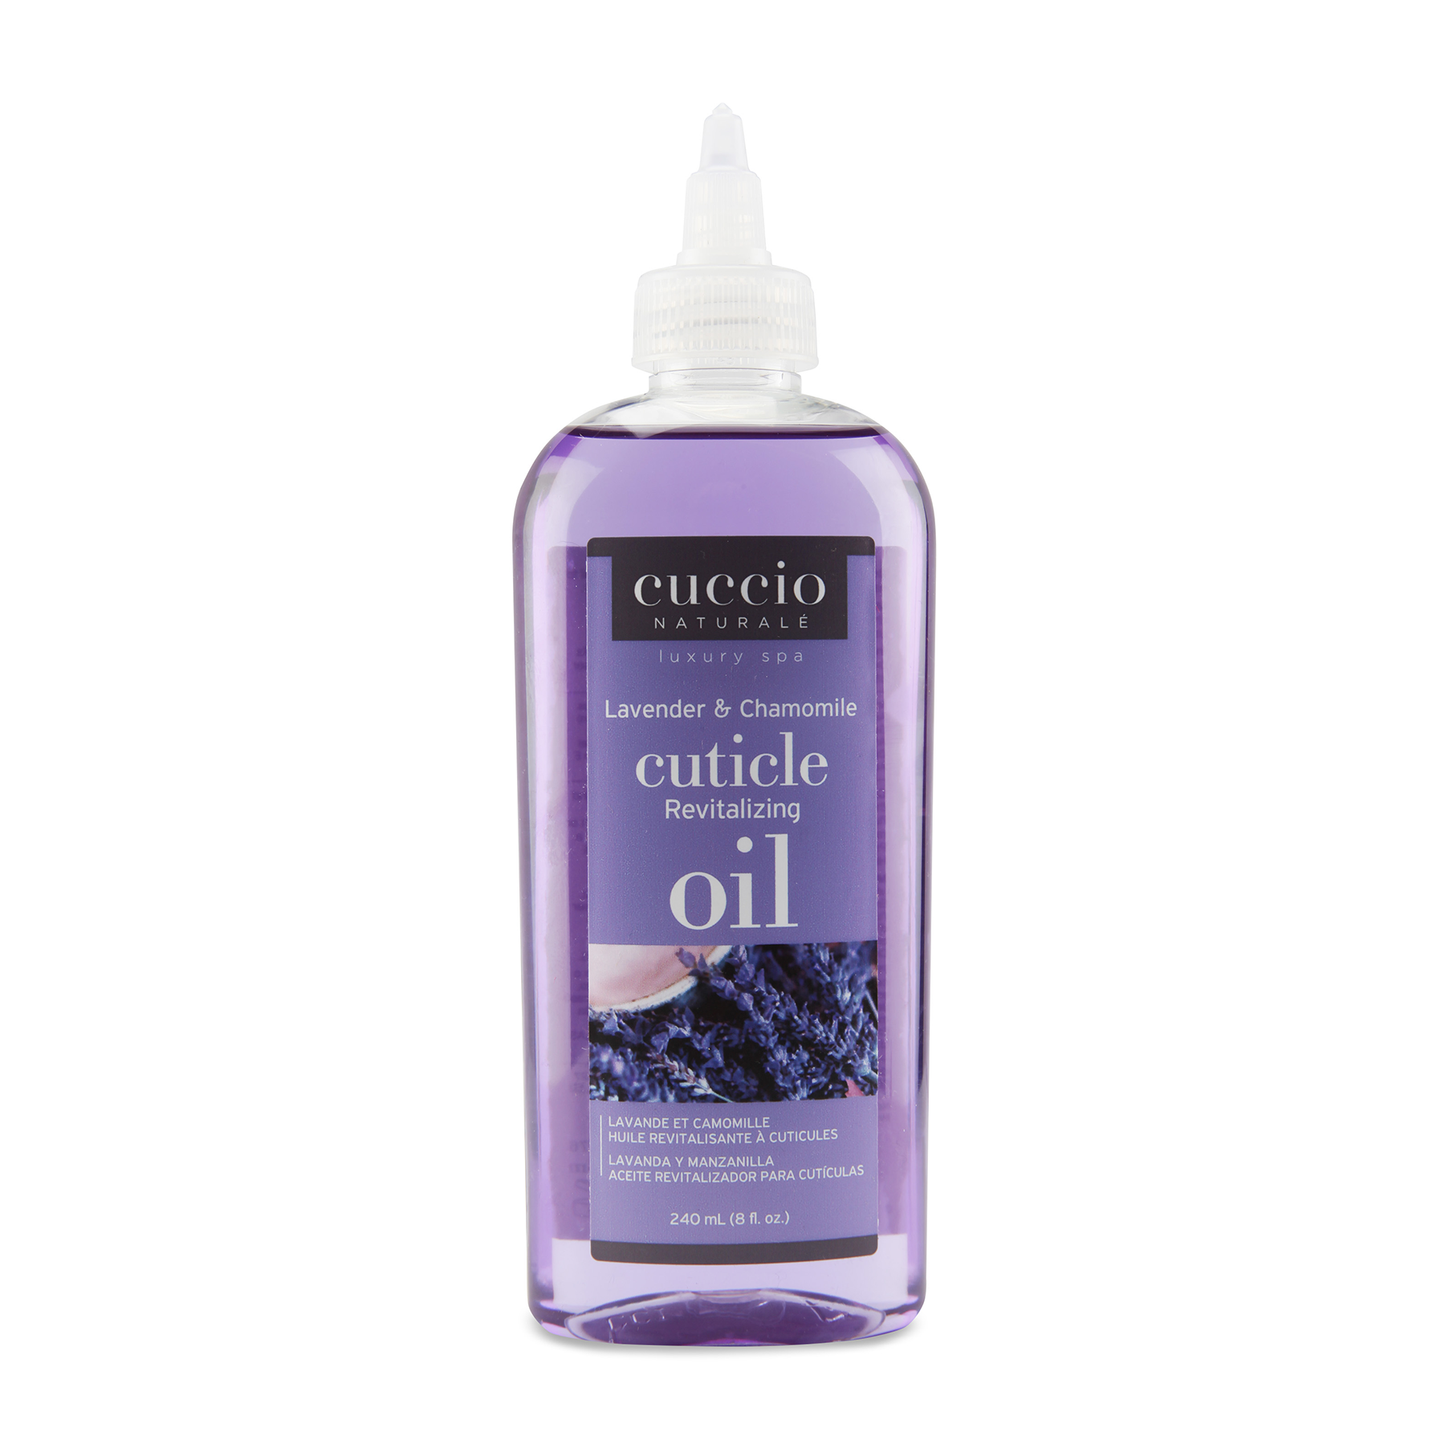 Revitalizing Cuticle Oil Lavender & Chamomile 240 ml